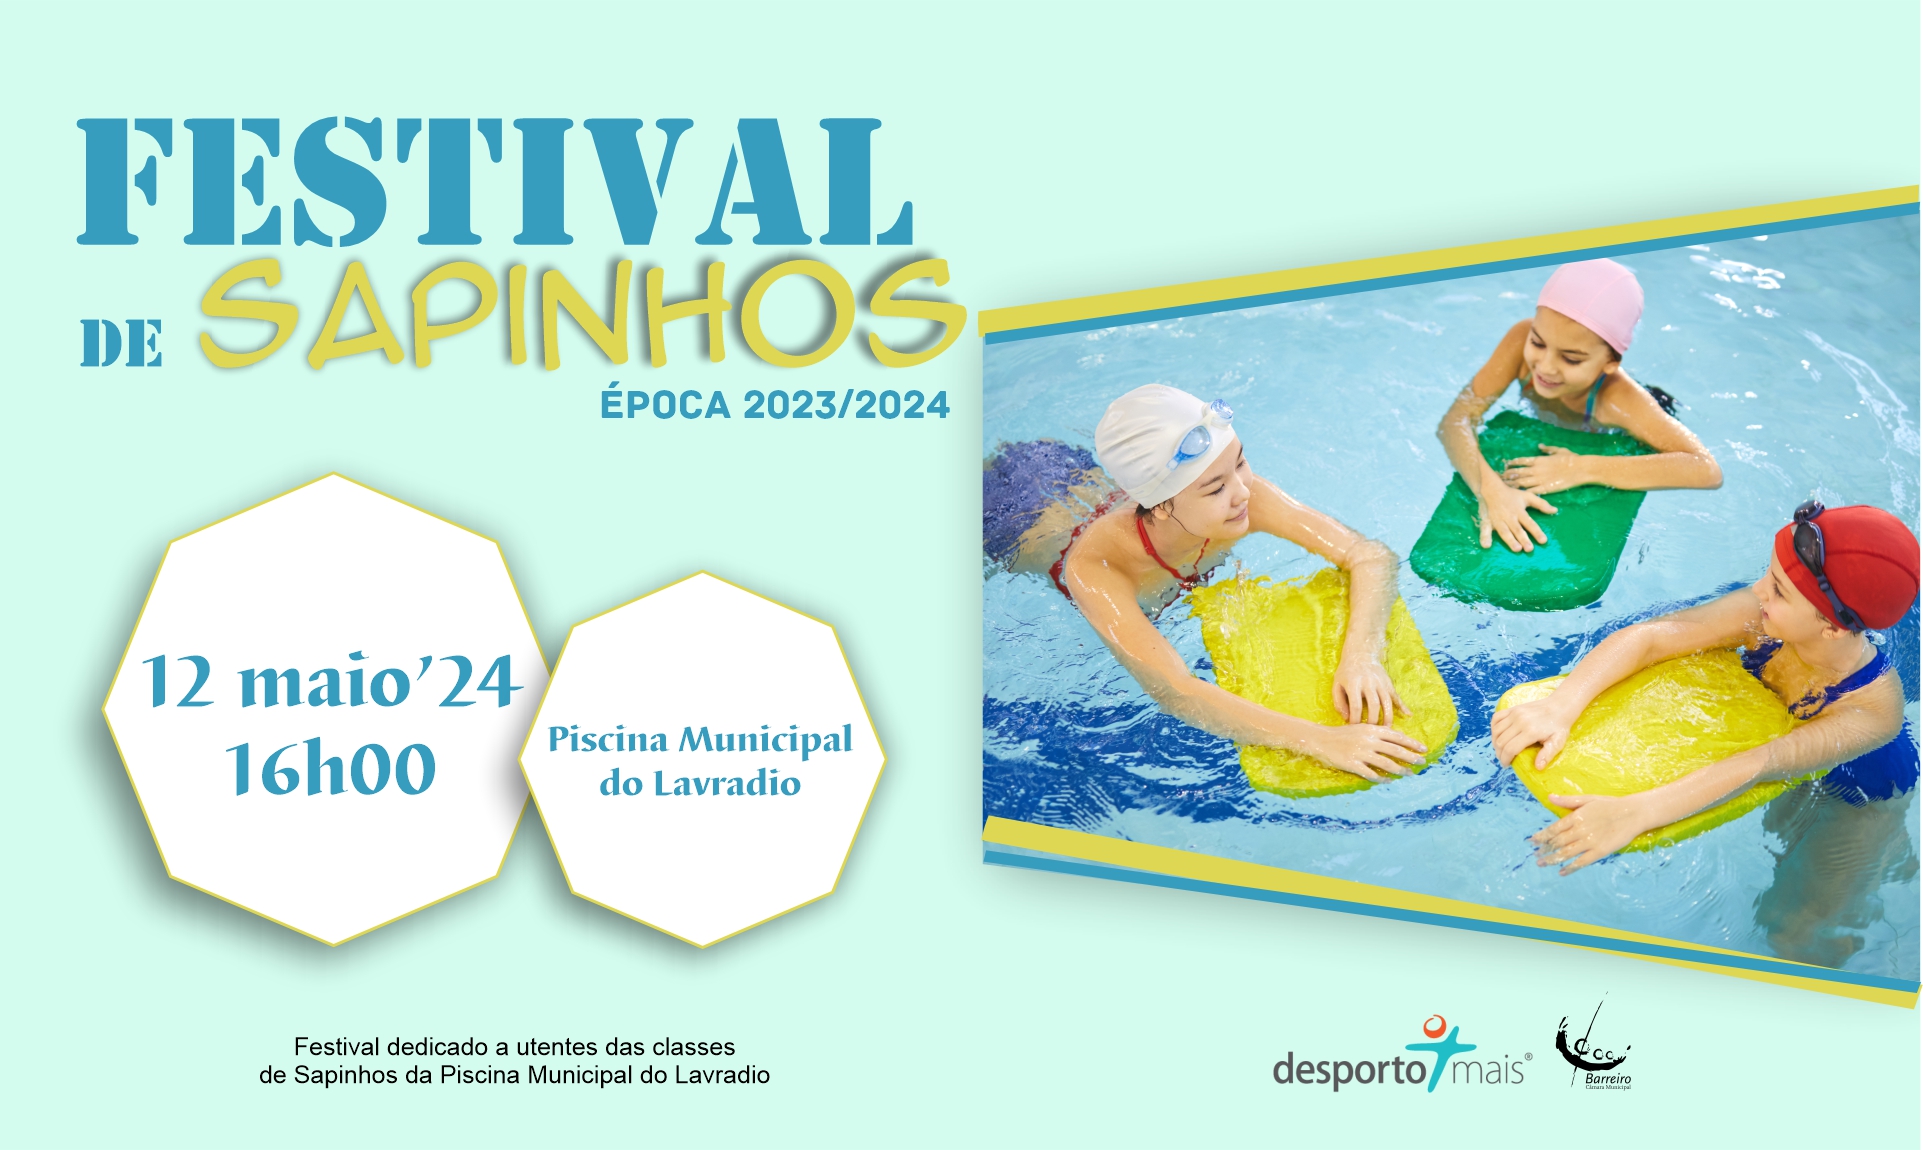 Festival de Sapinhos 2023/2024 | Natação | 12 maio | 16h00 | Piscina Municipal do Lavradio (Car...